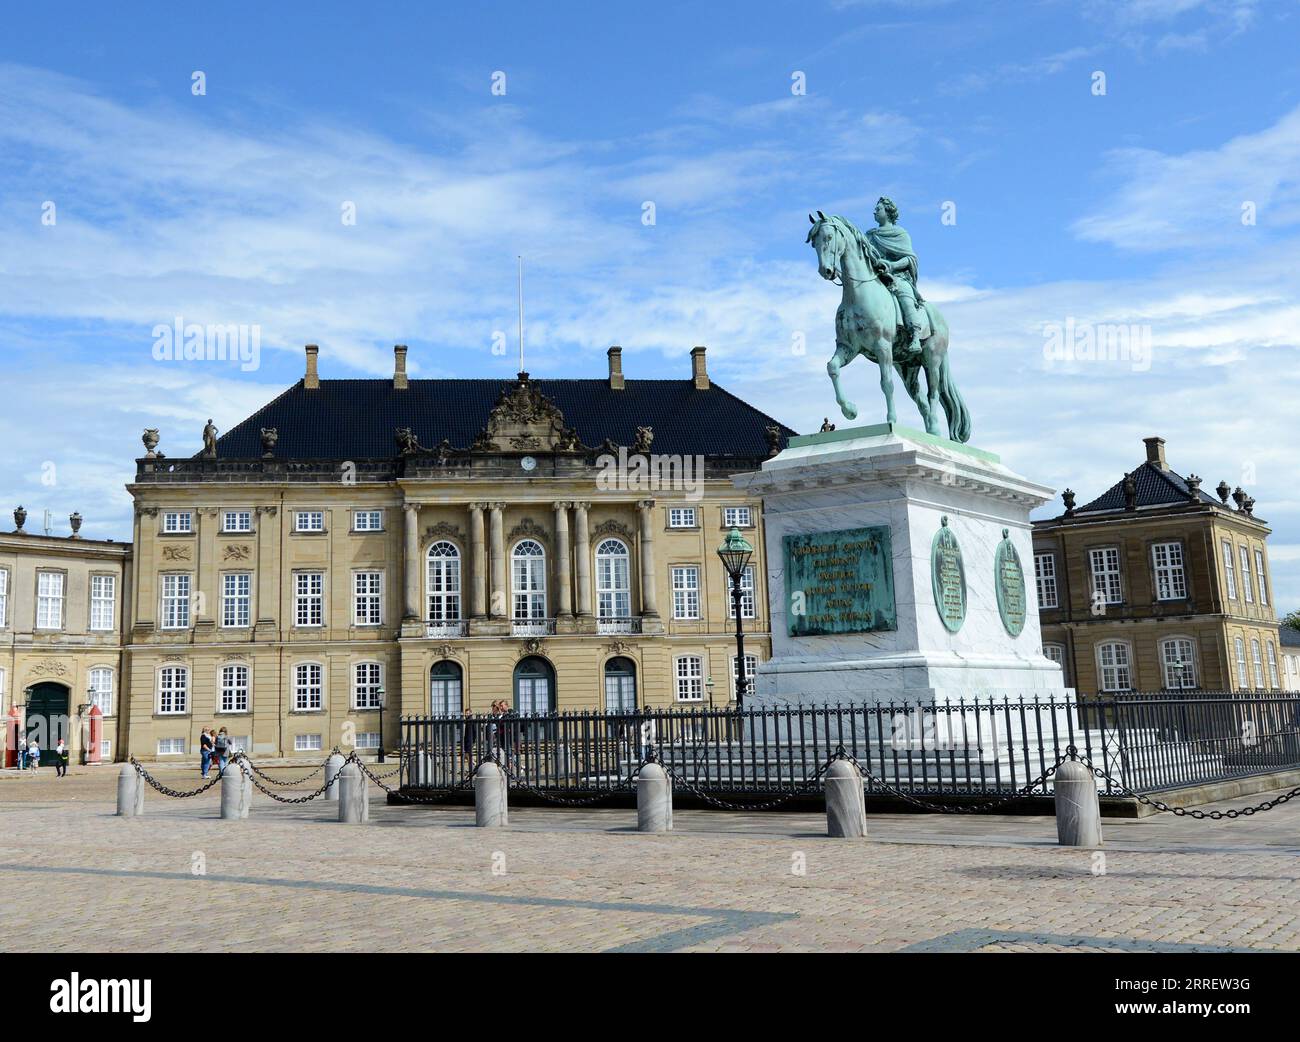 Rytterstatuen - Una statua equestre di bronzo del re Frederik V montata su una base di marmo e completata nel 1771. Castello di Amalienborg, Copenaghen, Danimarca. Foto Stock